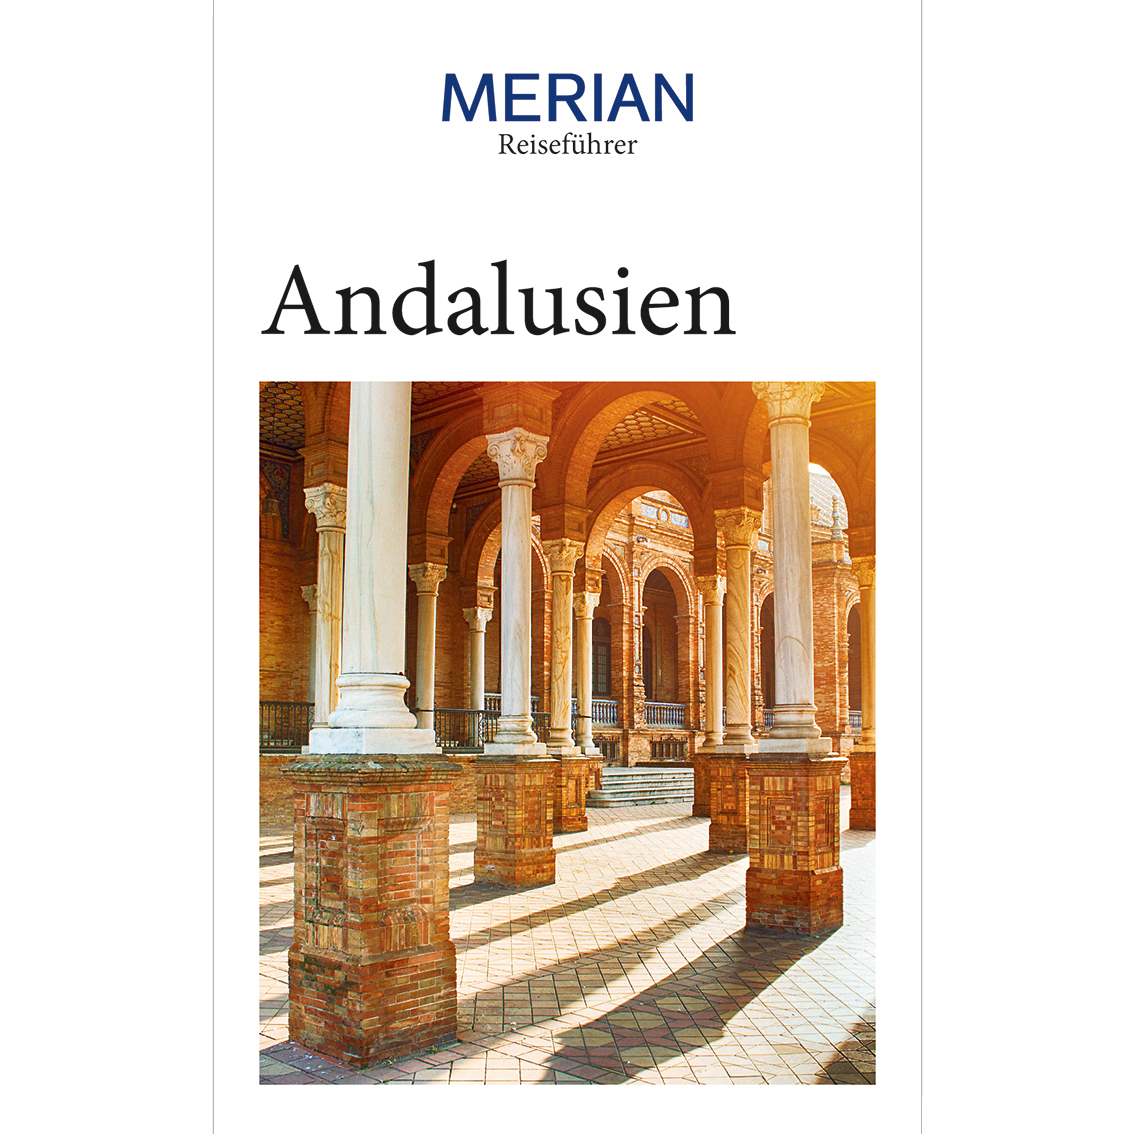 Reiseführer Merian Andalusien